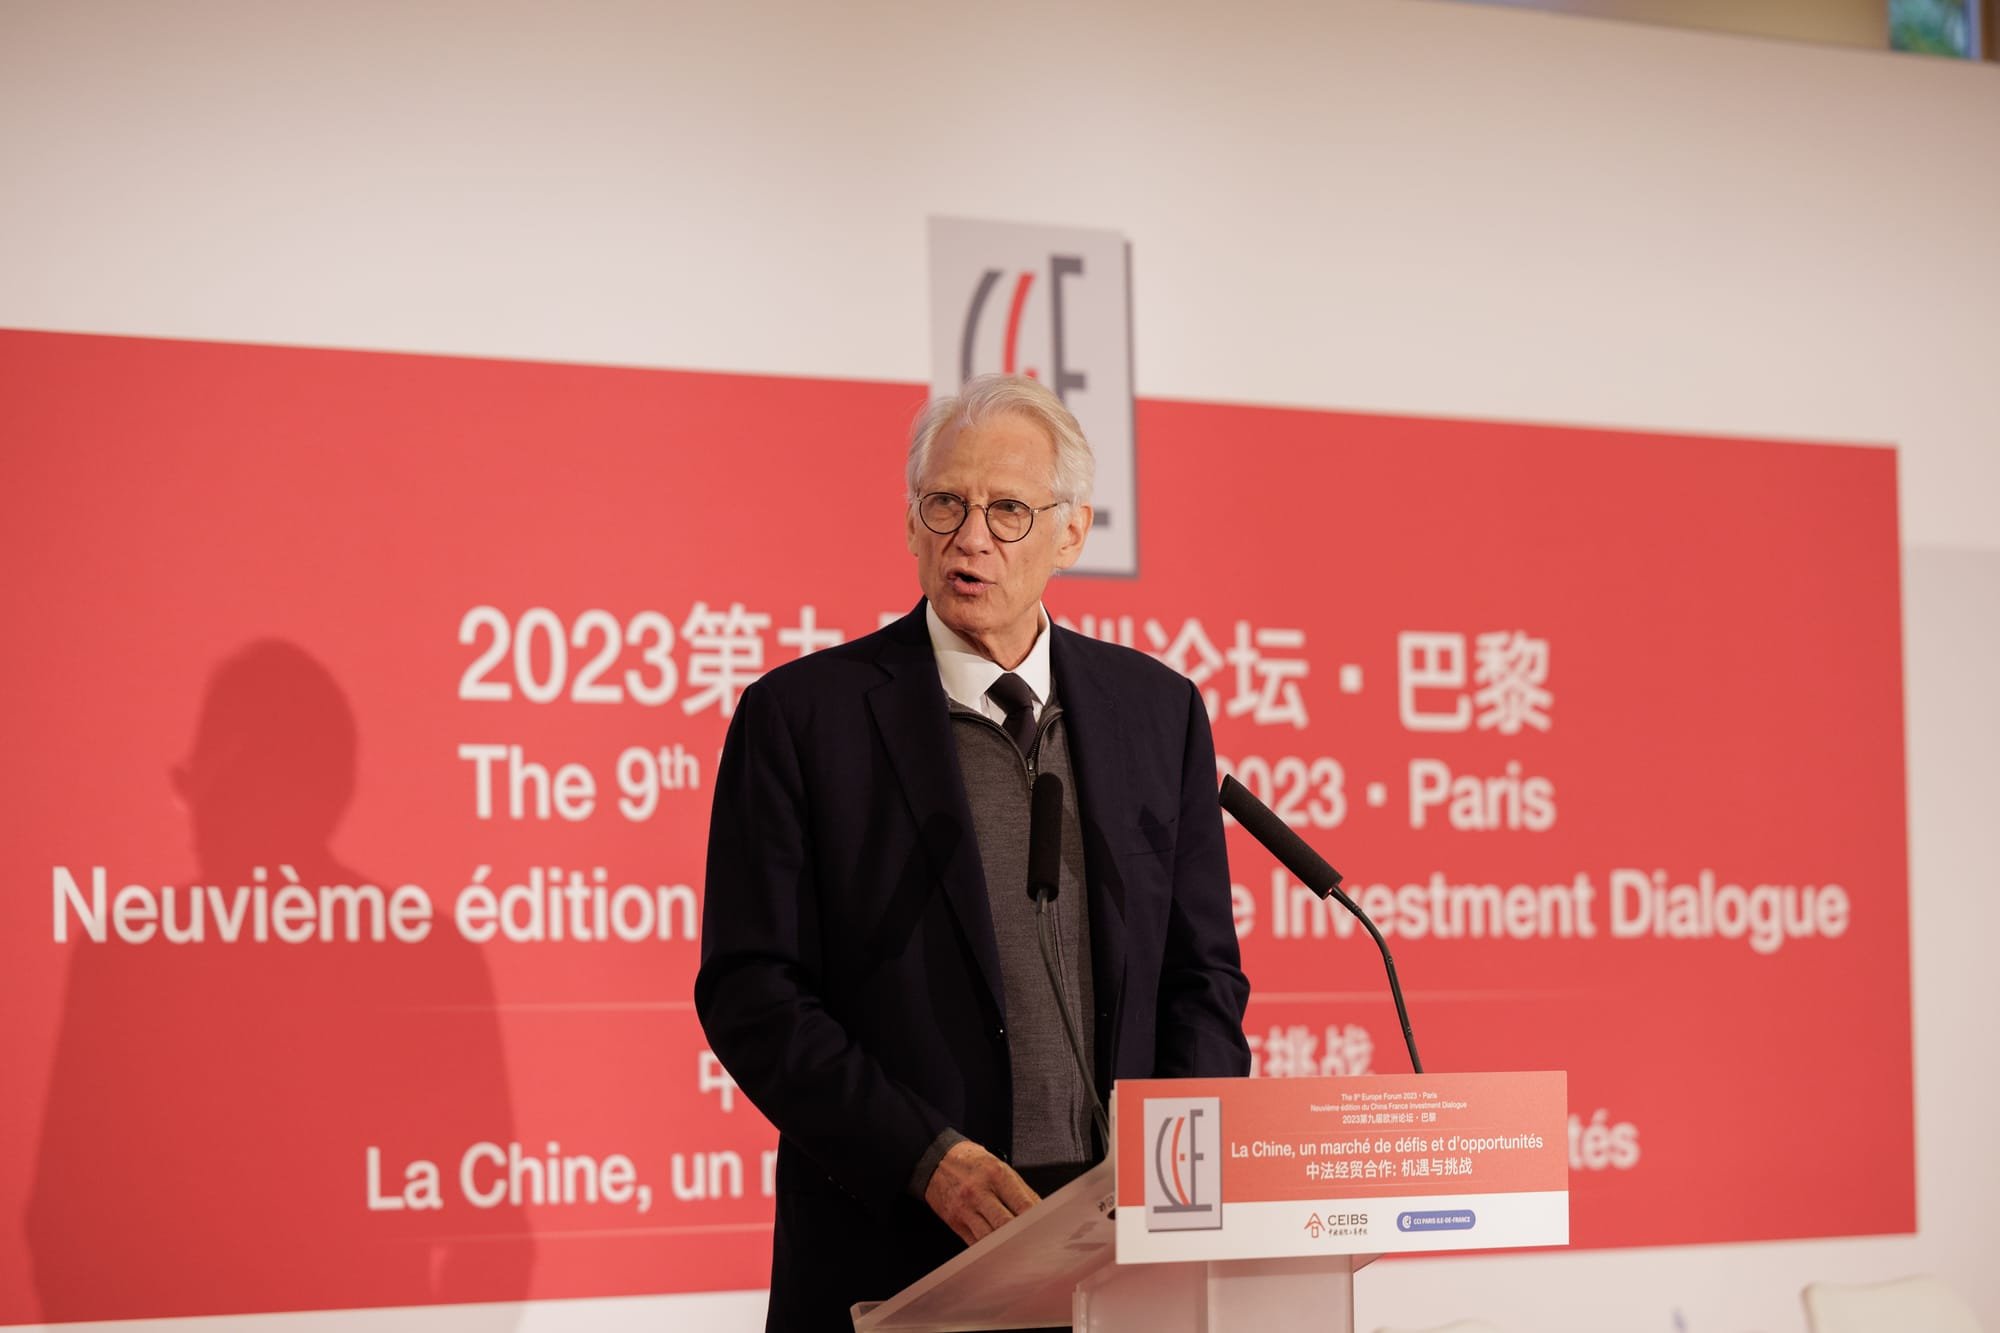 Discours de cloture du China France Investment Dialogue 2023 par M. de Villepin